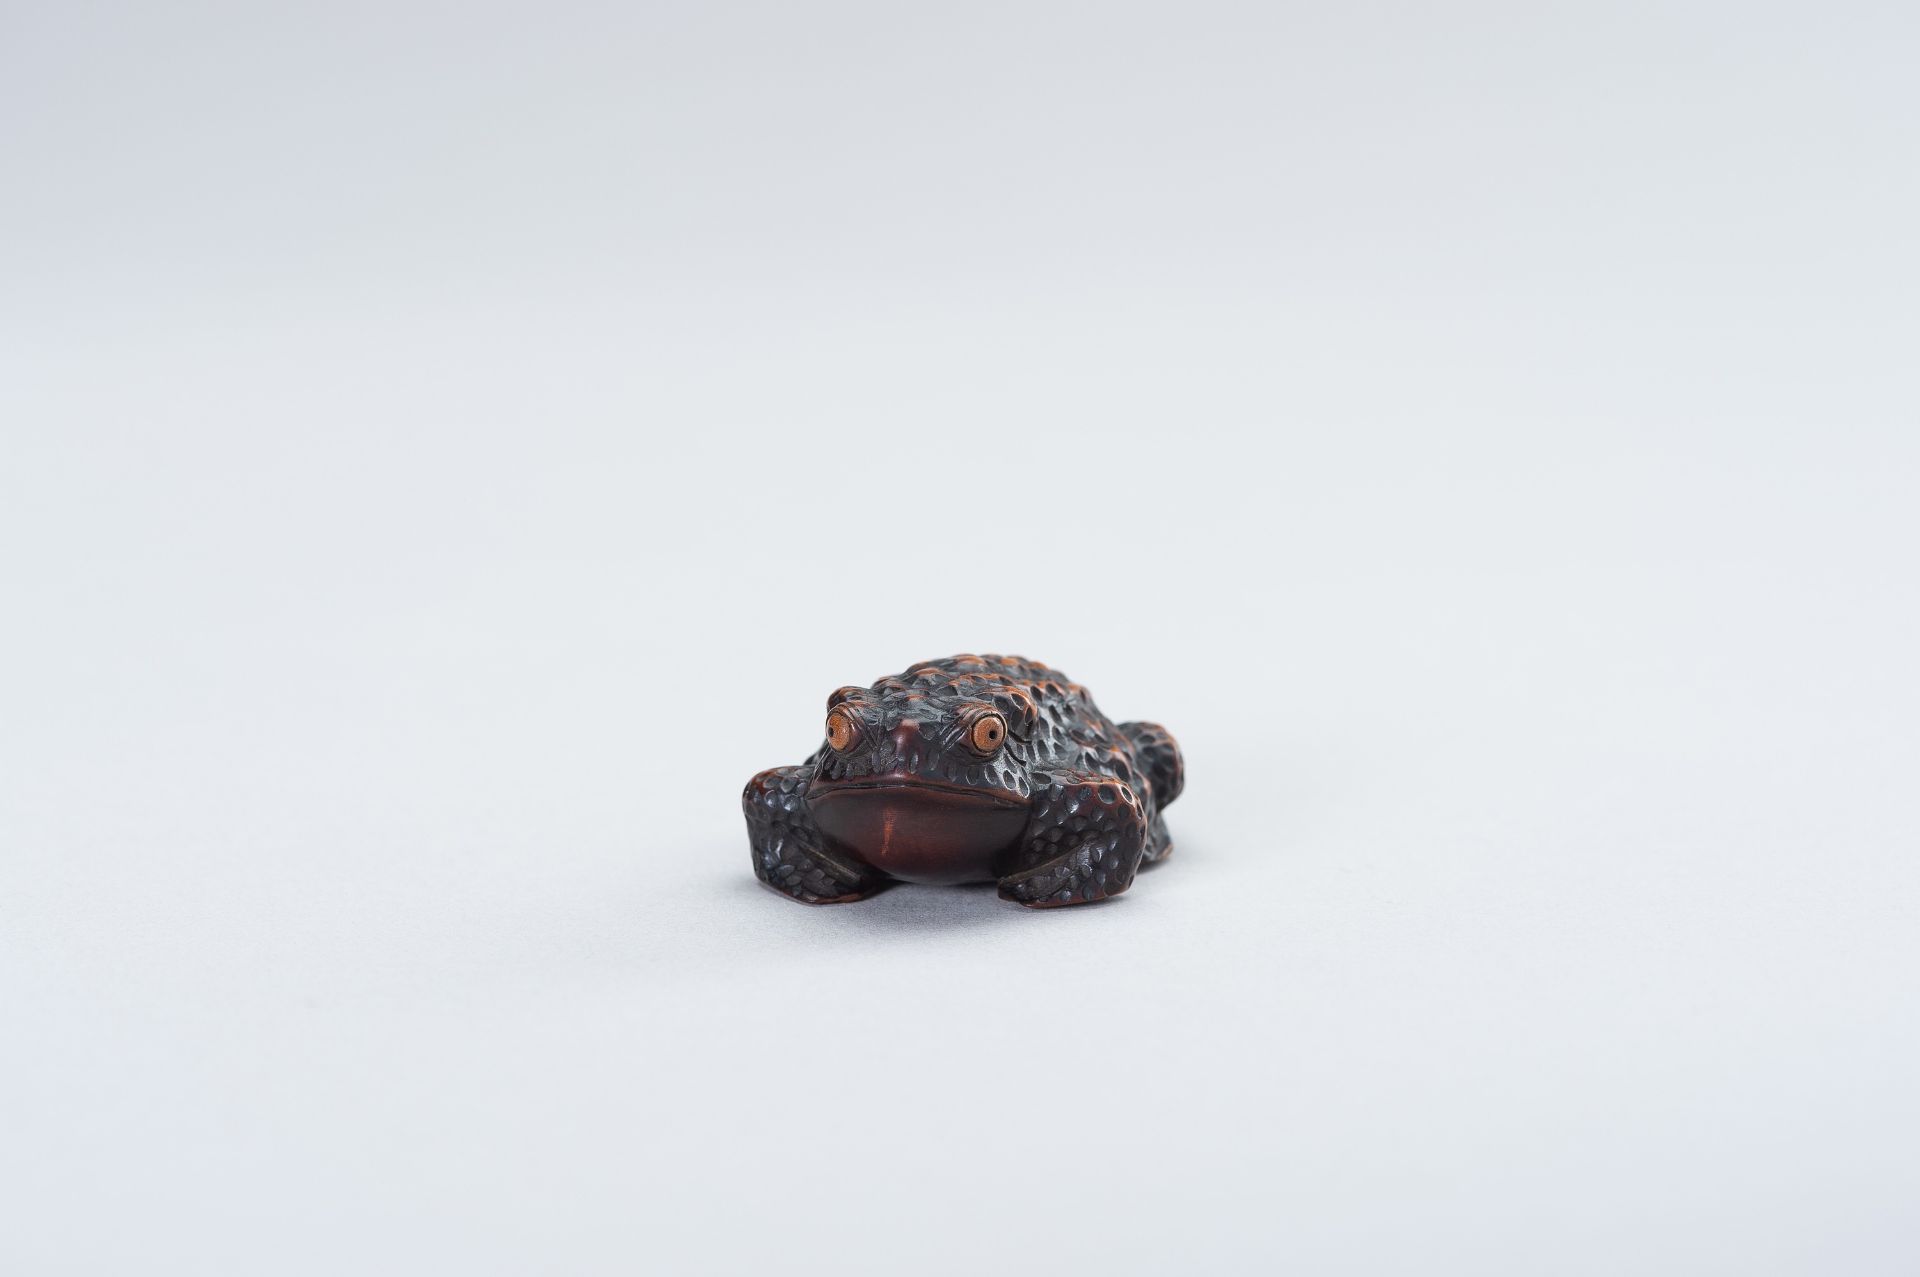 SHIGETADA: A WOOD NETSUKE OF A TOAD - Image 4 of 14